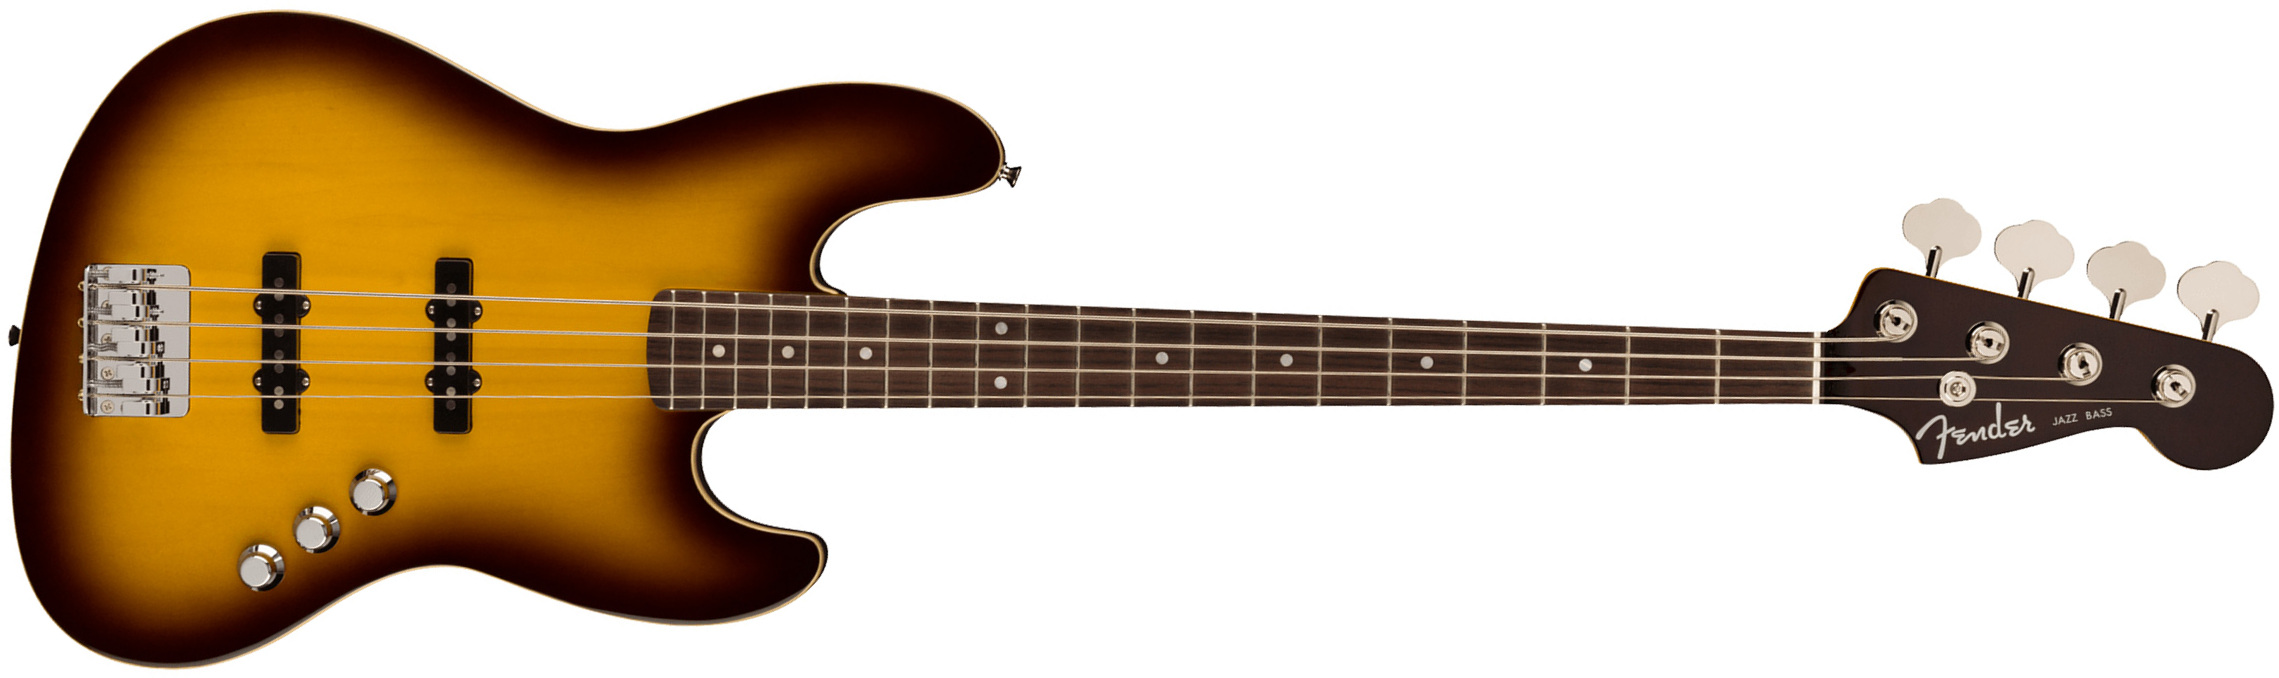 Fender Jazz Bass Aerodyne Special Jap Rw - Chocolate Burst - Solid body elektrische bas - Main picture